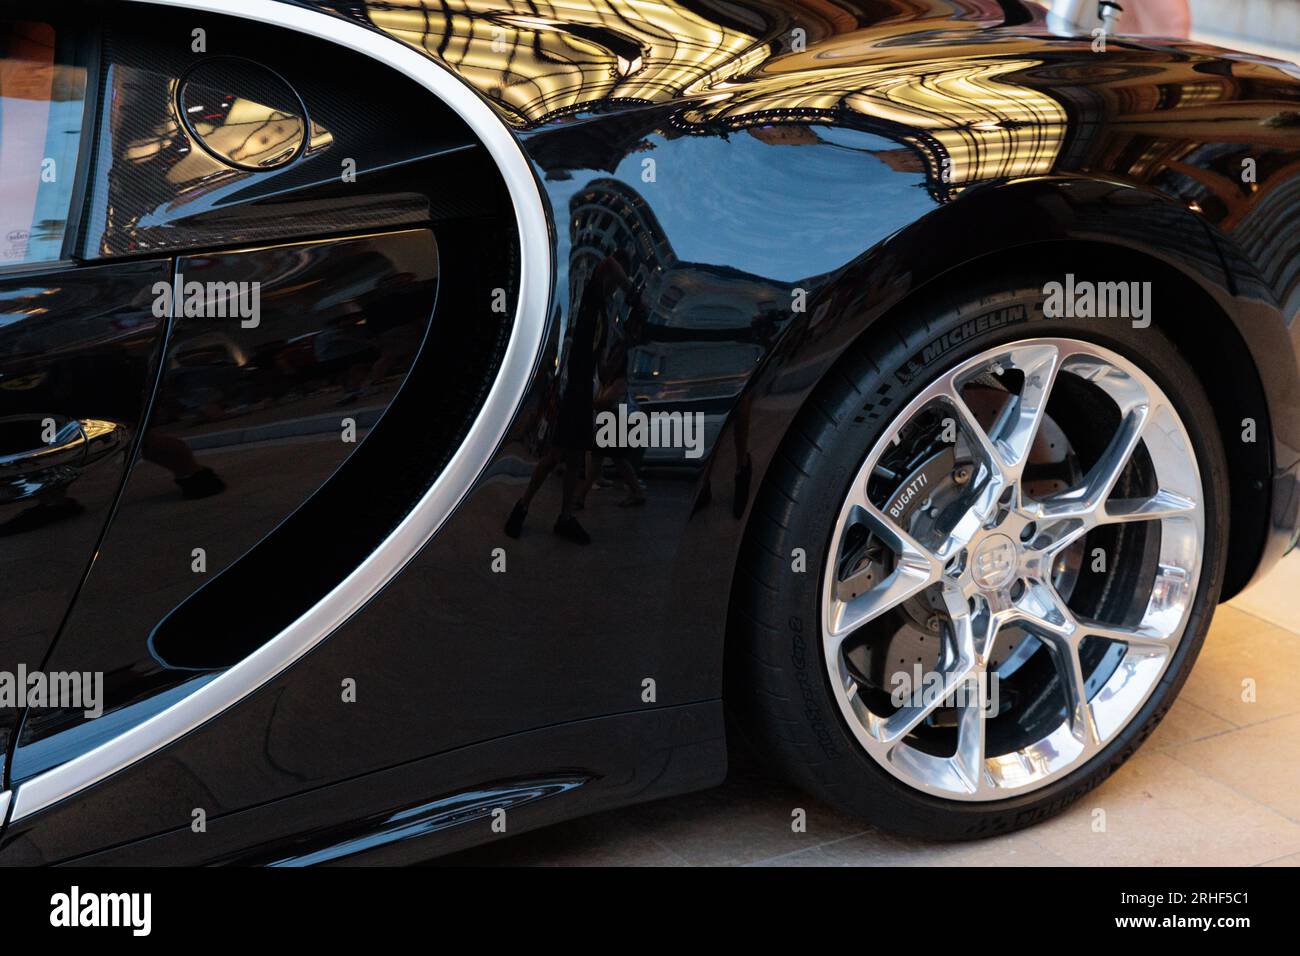 Bugatti Chiron parked outside the Casino in Monte Carlo, Monaco Stock Photo